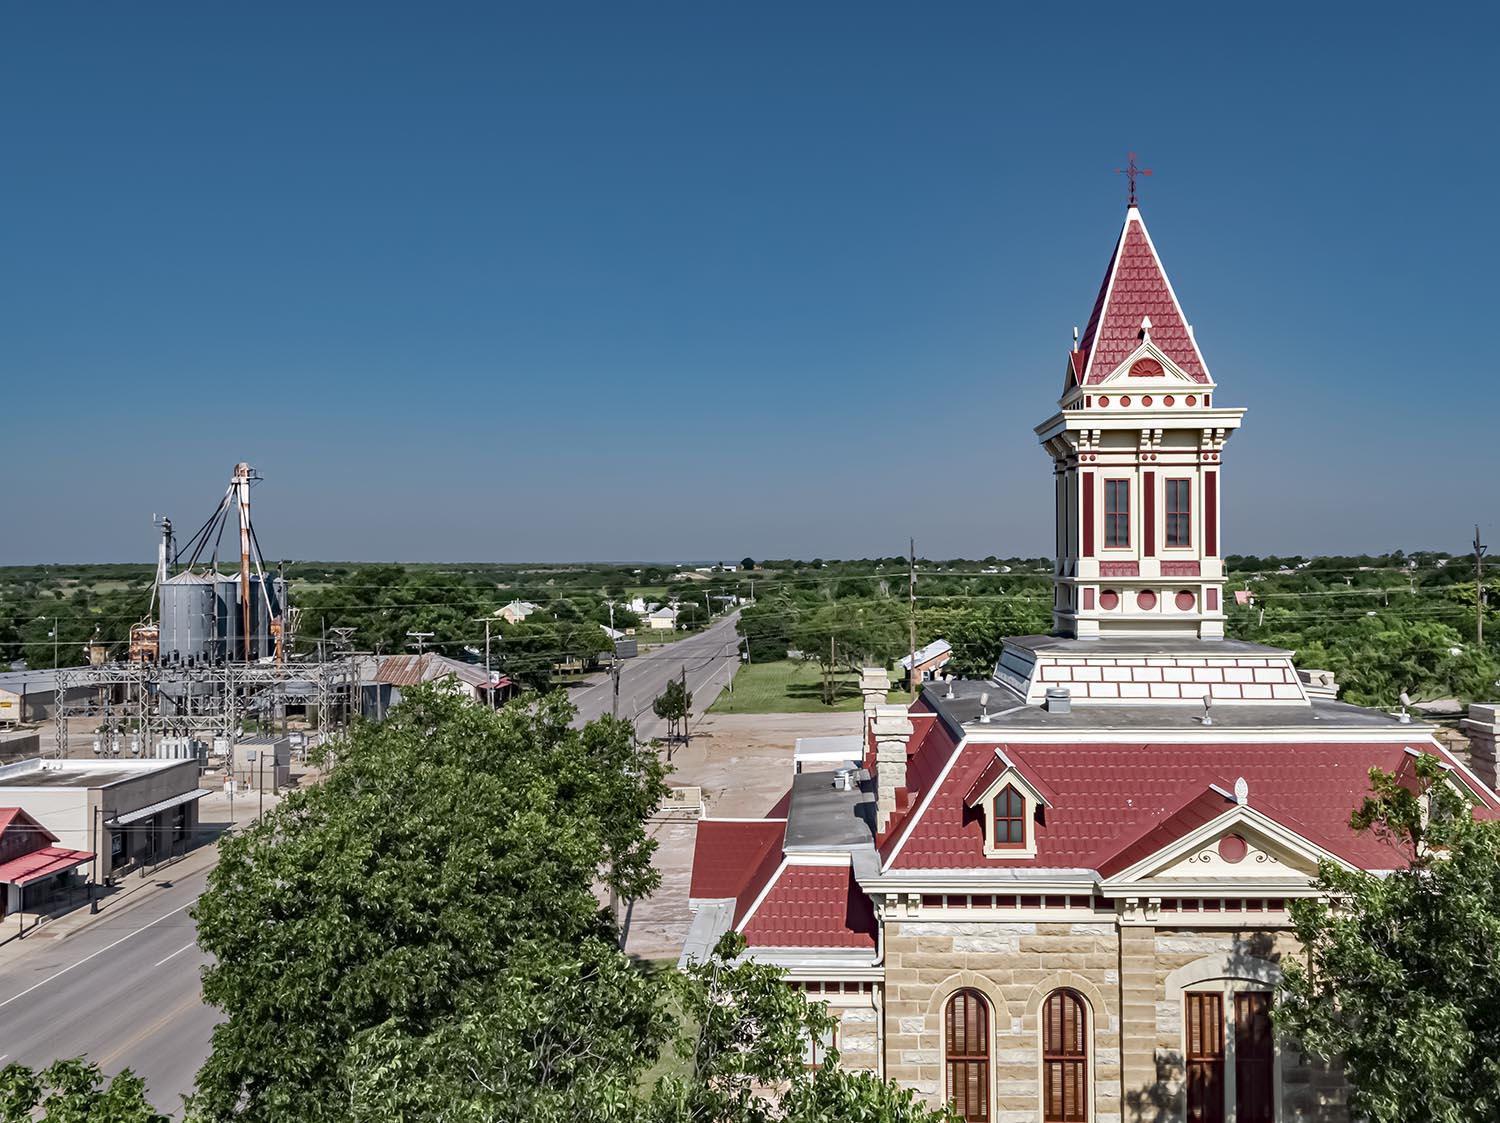 Throckmorton County Courthouse - 1890 | 
Throckmorton, Texas